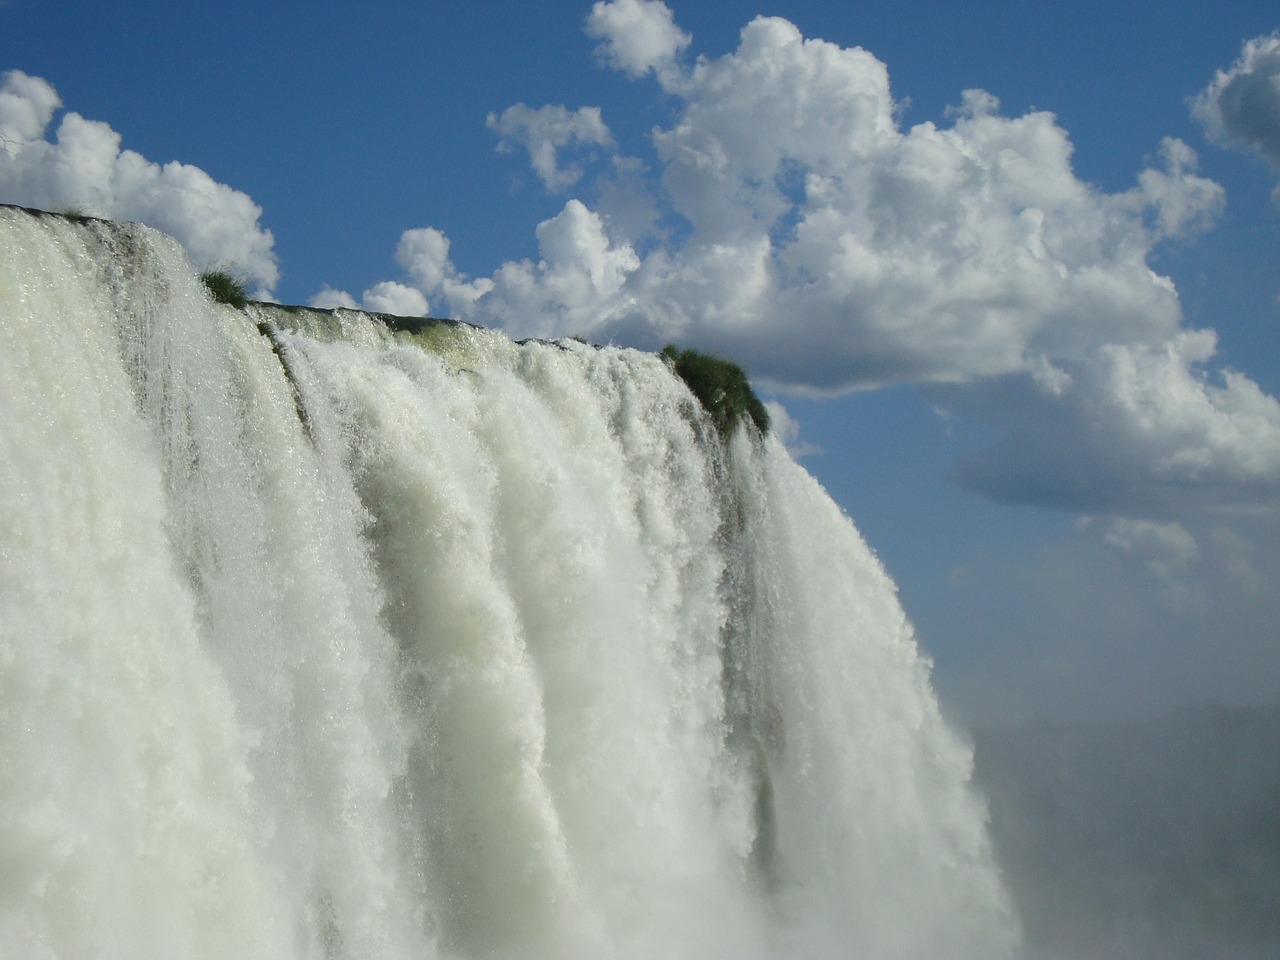 Cataratas del Iguazú cierre total del acceso por 48 horas.